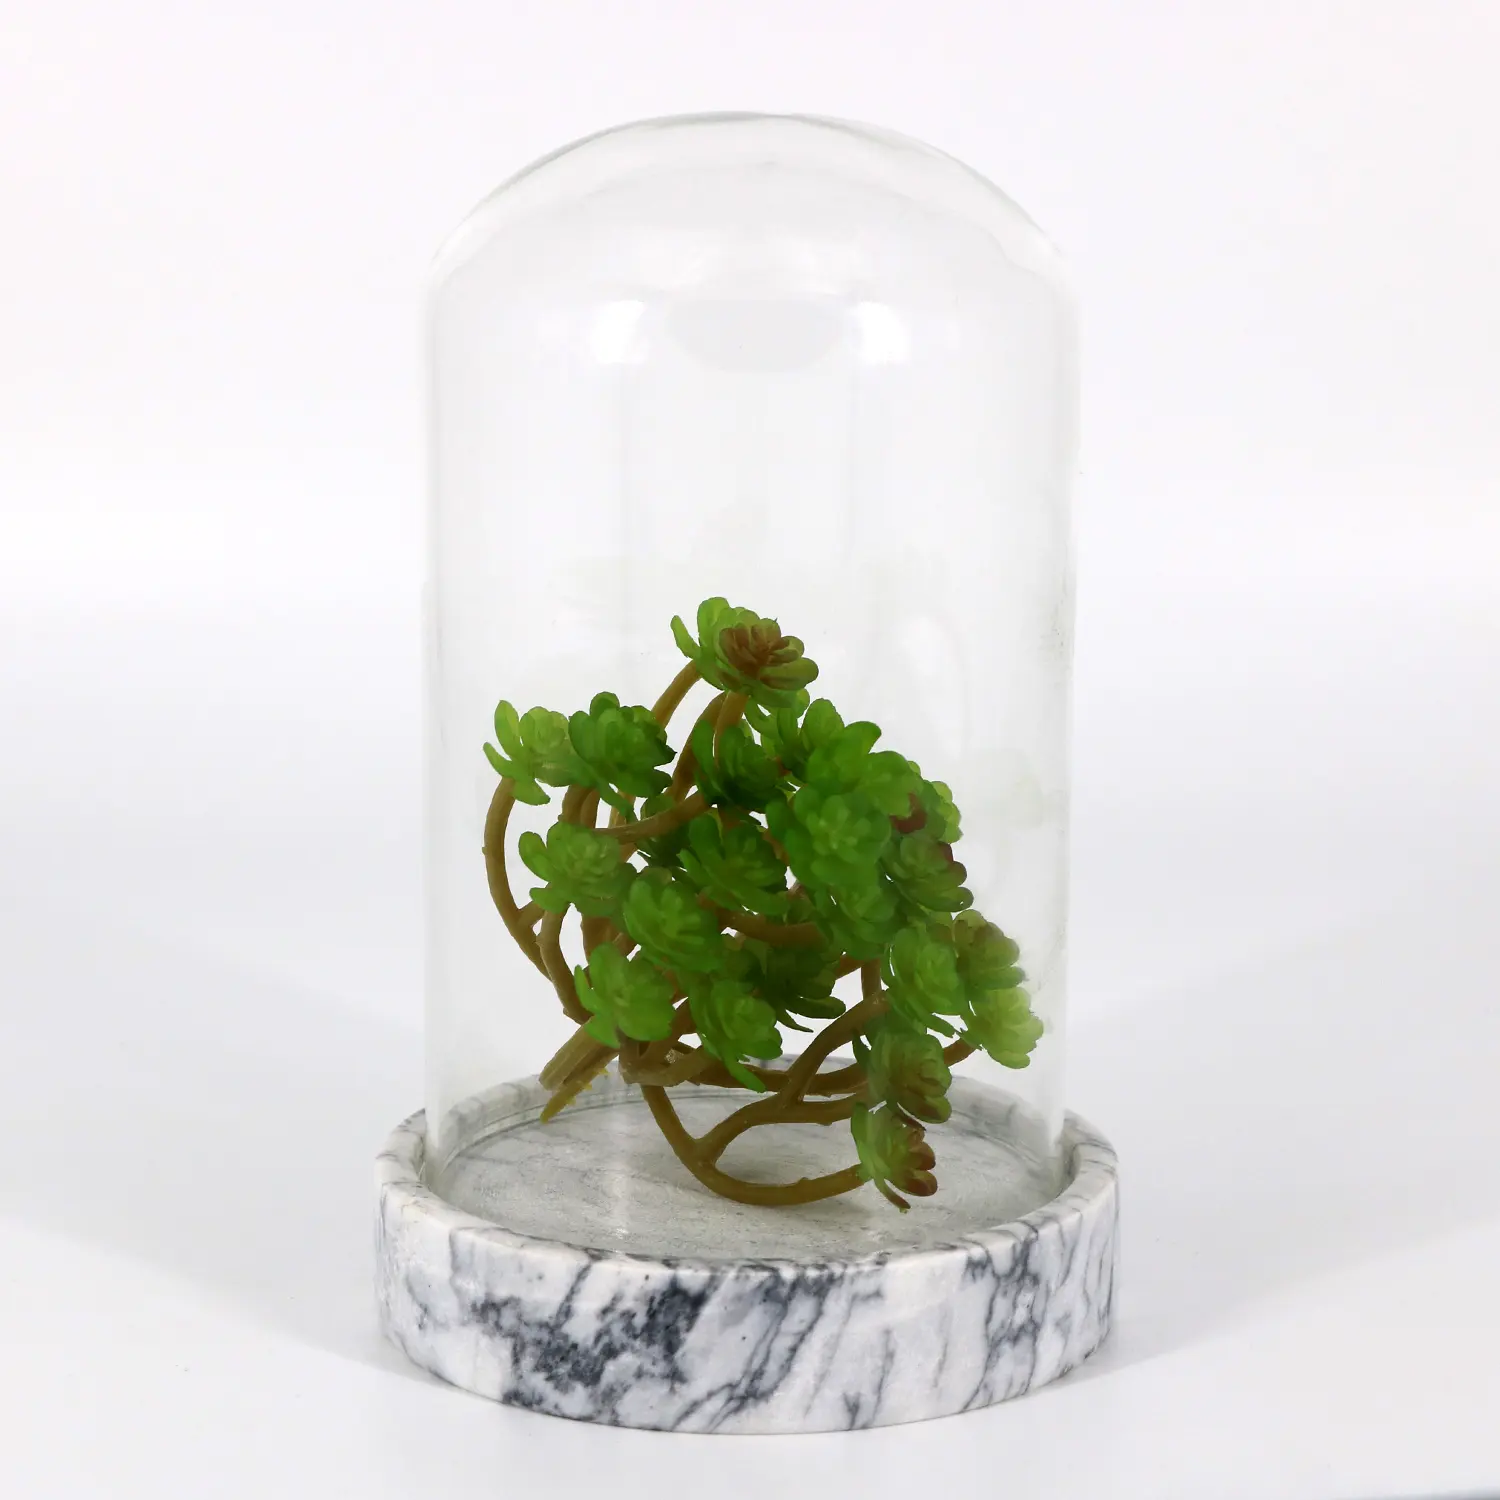 Vendita diretta Base in marmo piante succulente con copertura in vetro sferico Design in plastica giardino casa vivaio scrivania Patio-stile europa